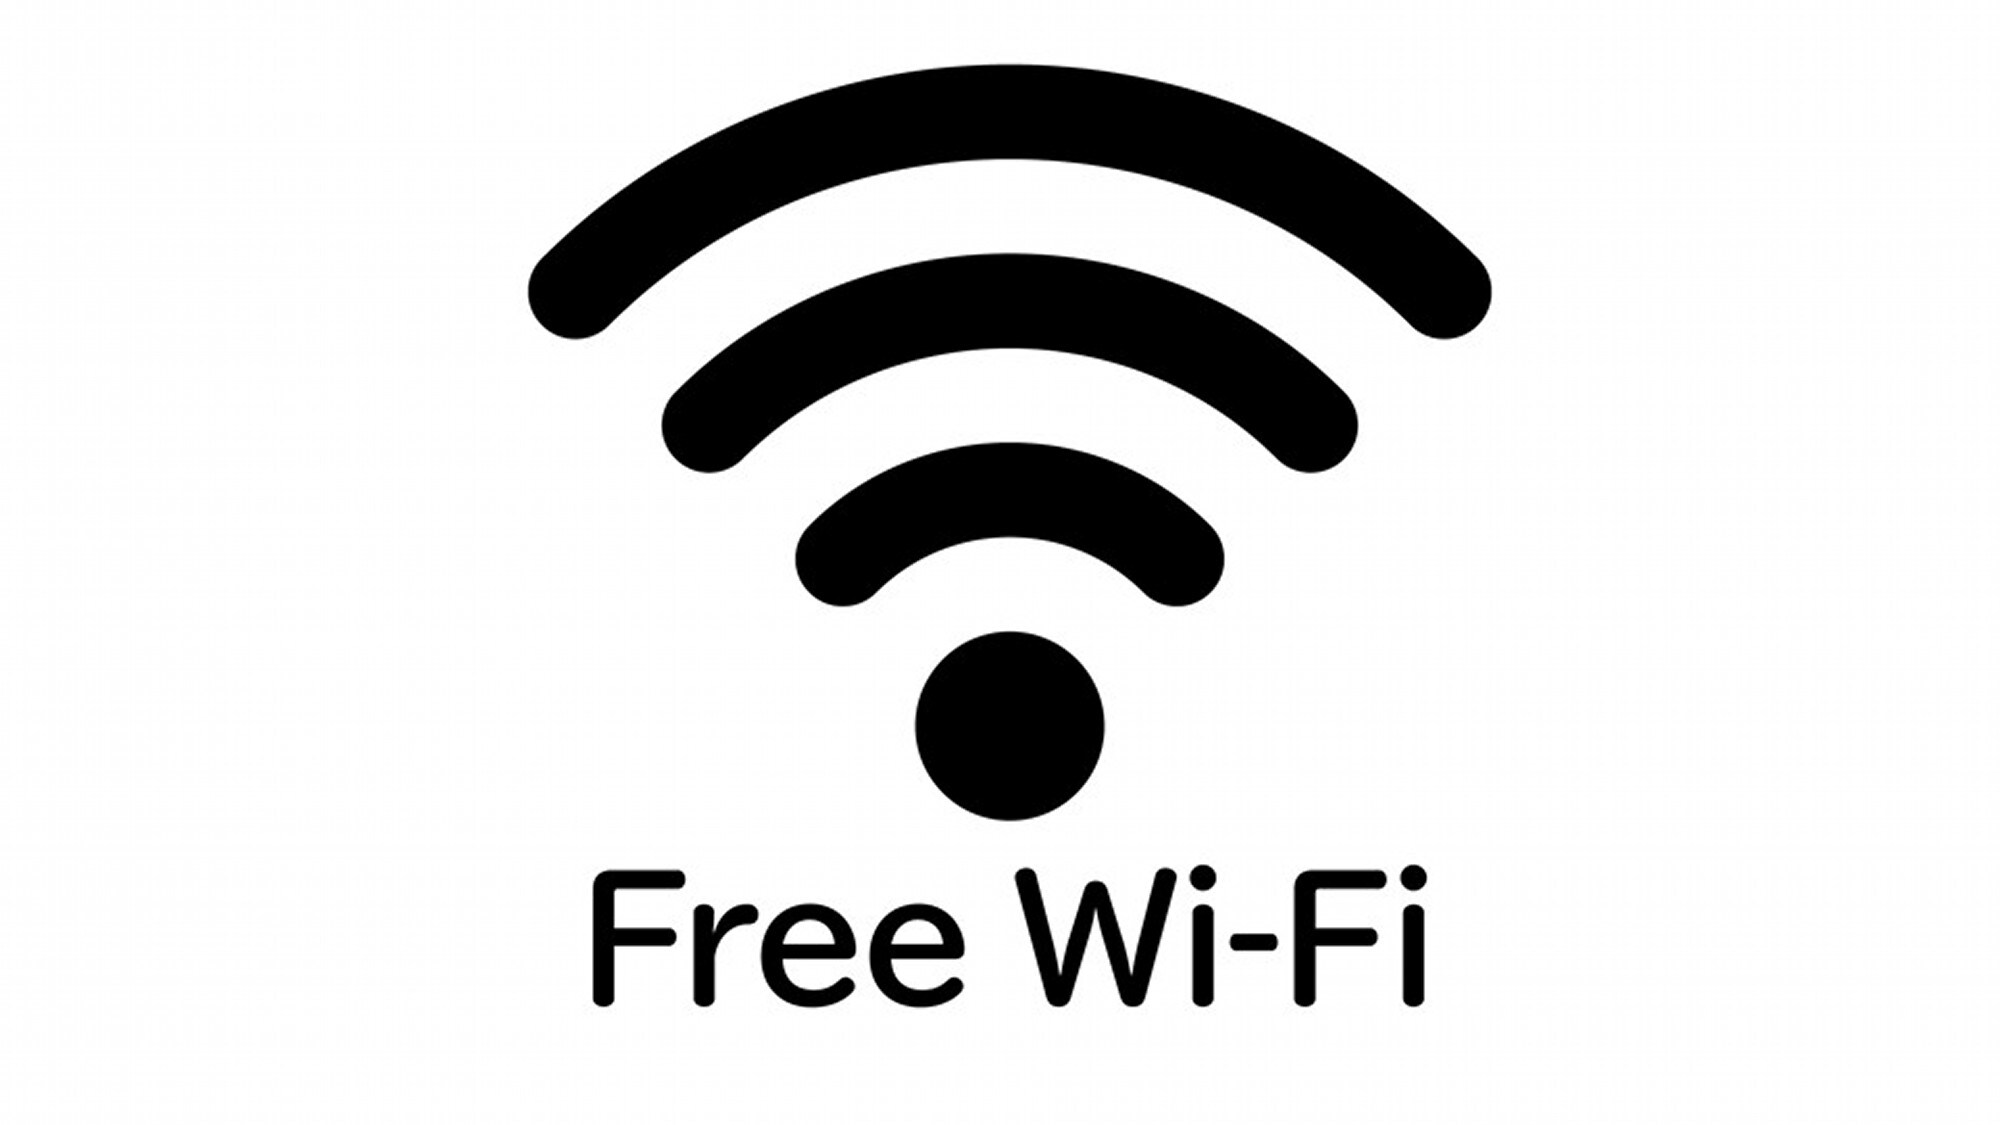 免費無線網絡 * 也提供有線局域網。